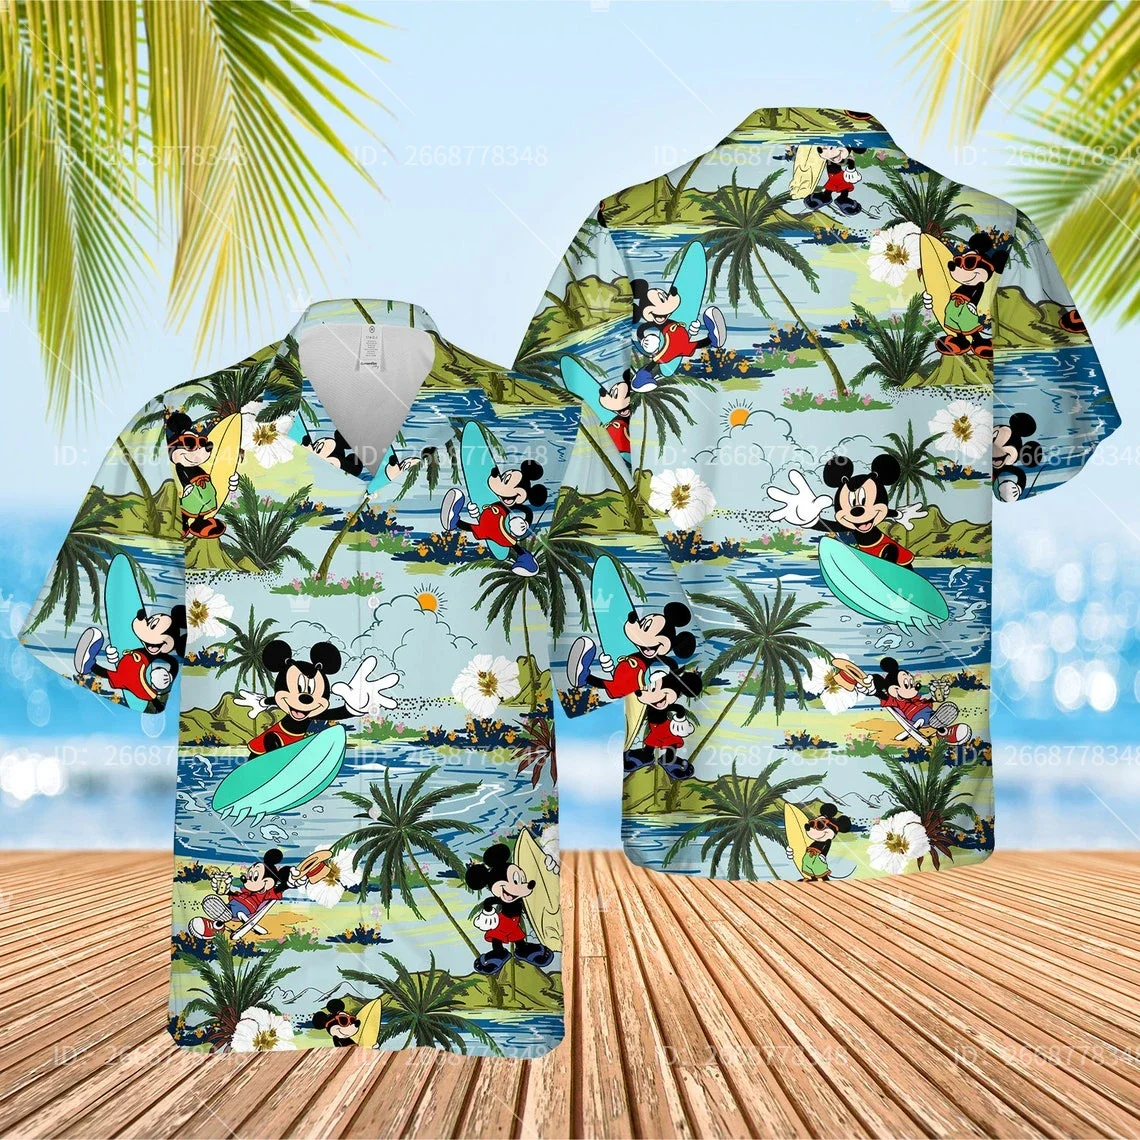 

Летняя гавайская рубашка Disney с Микки и Минни Маус, Подарочная рубашка Disney World, праздничная рубашка Hawai с Микки и друзьями для отпуска семьи